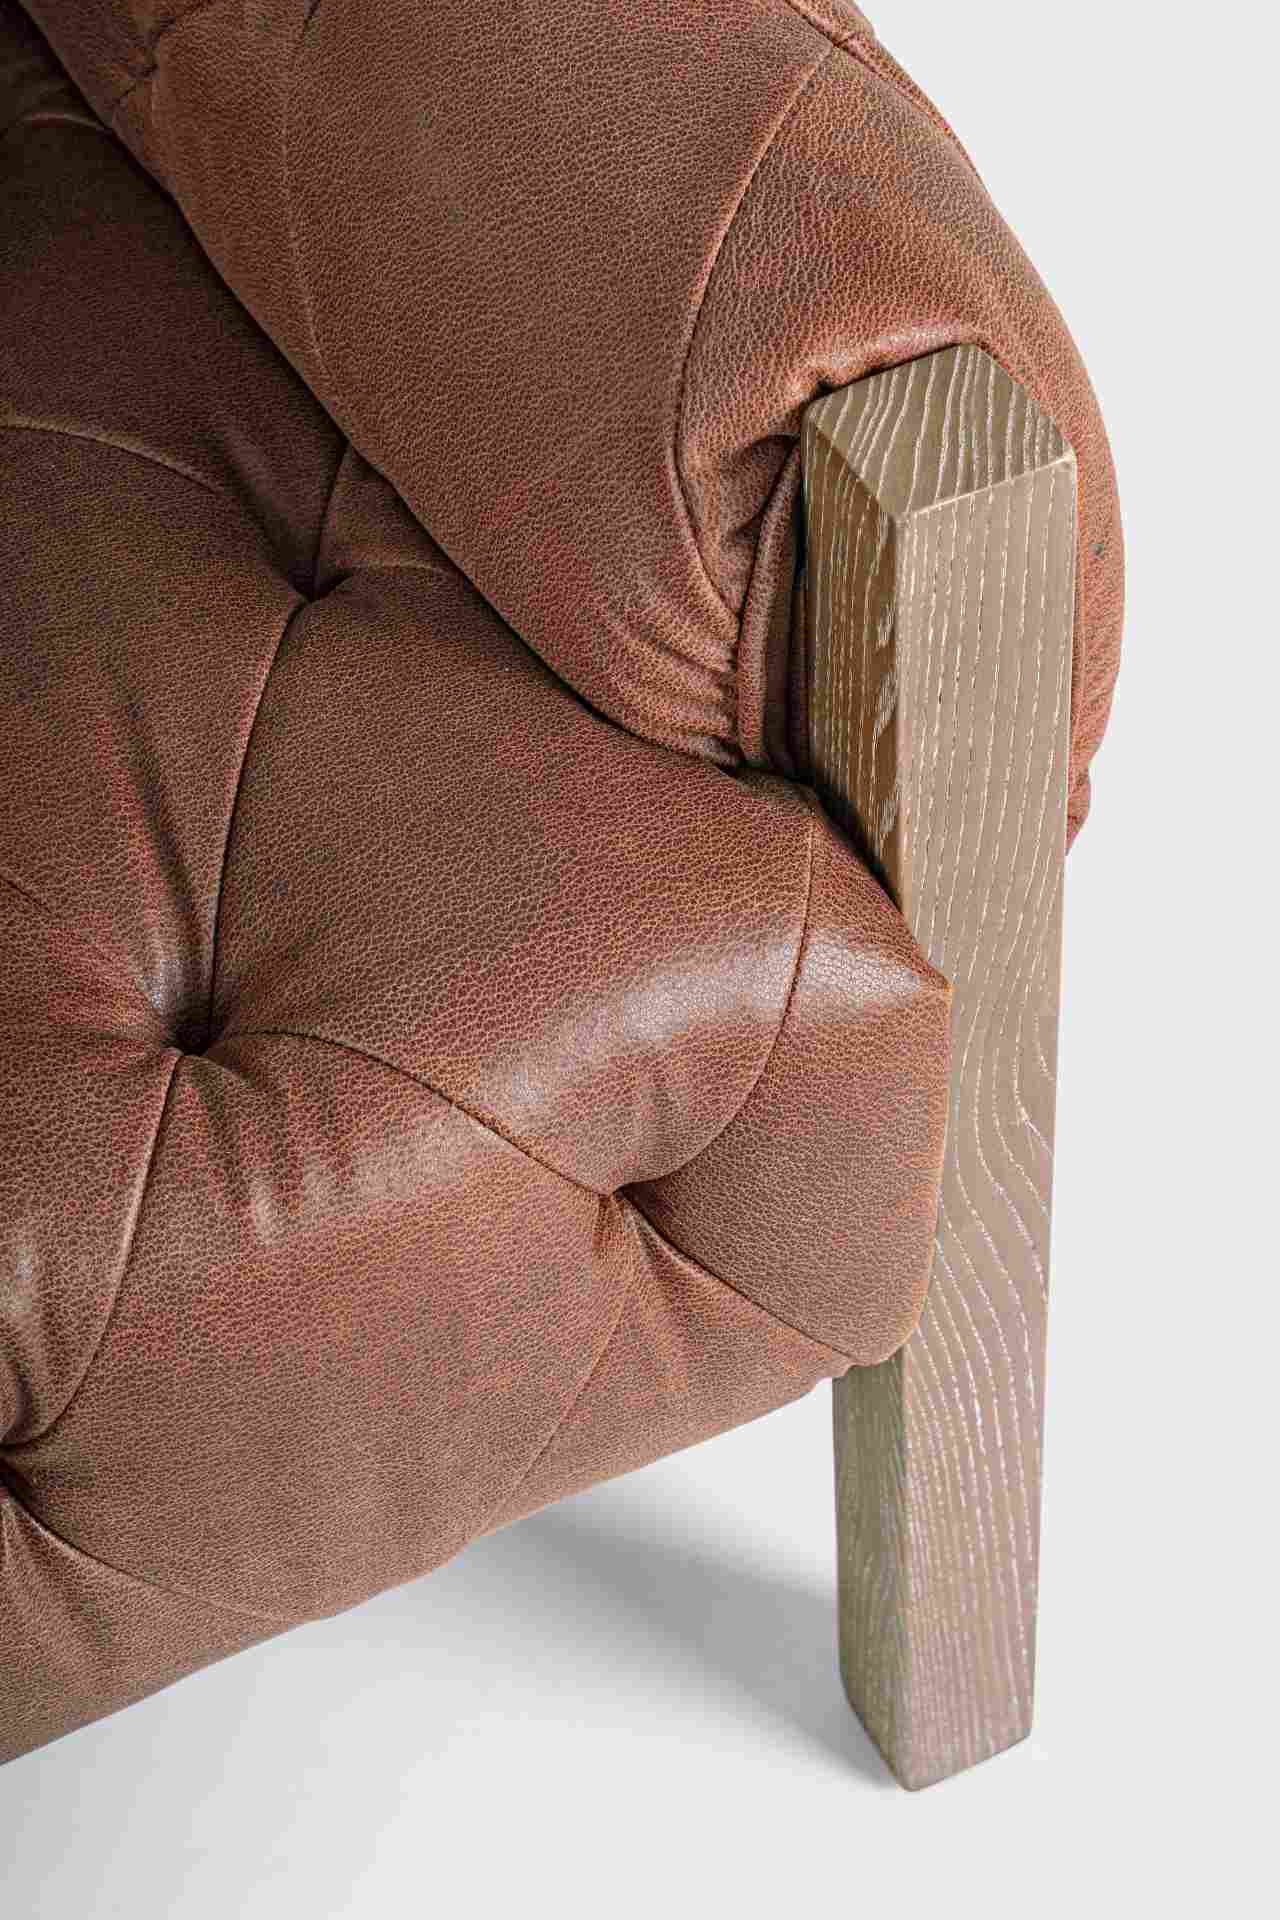 Der Sessel Harrison überzeugt mit seinem klassischen Design. Gefertigt wurde er aus Kunstleder, welches einen Cognac Farbton besitzt. Das Gestell ist aus Eschenholz und hat eine natürliche Farbe. Der Sessel besitzt eine Sitzhöhe von 45 cm. Die Breite betr